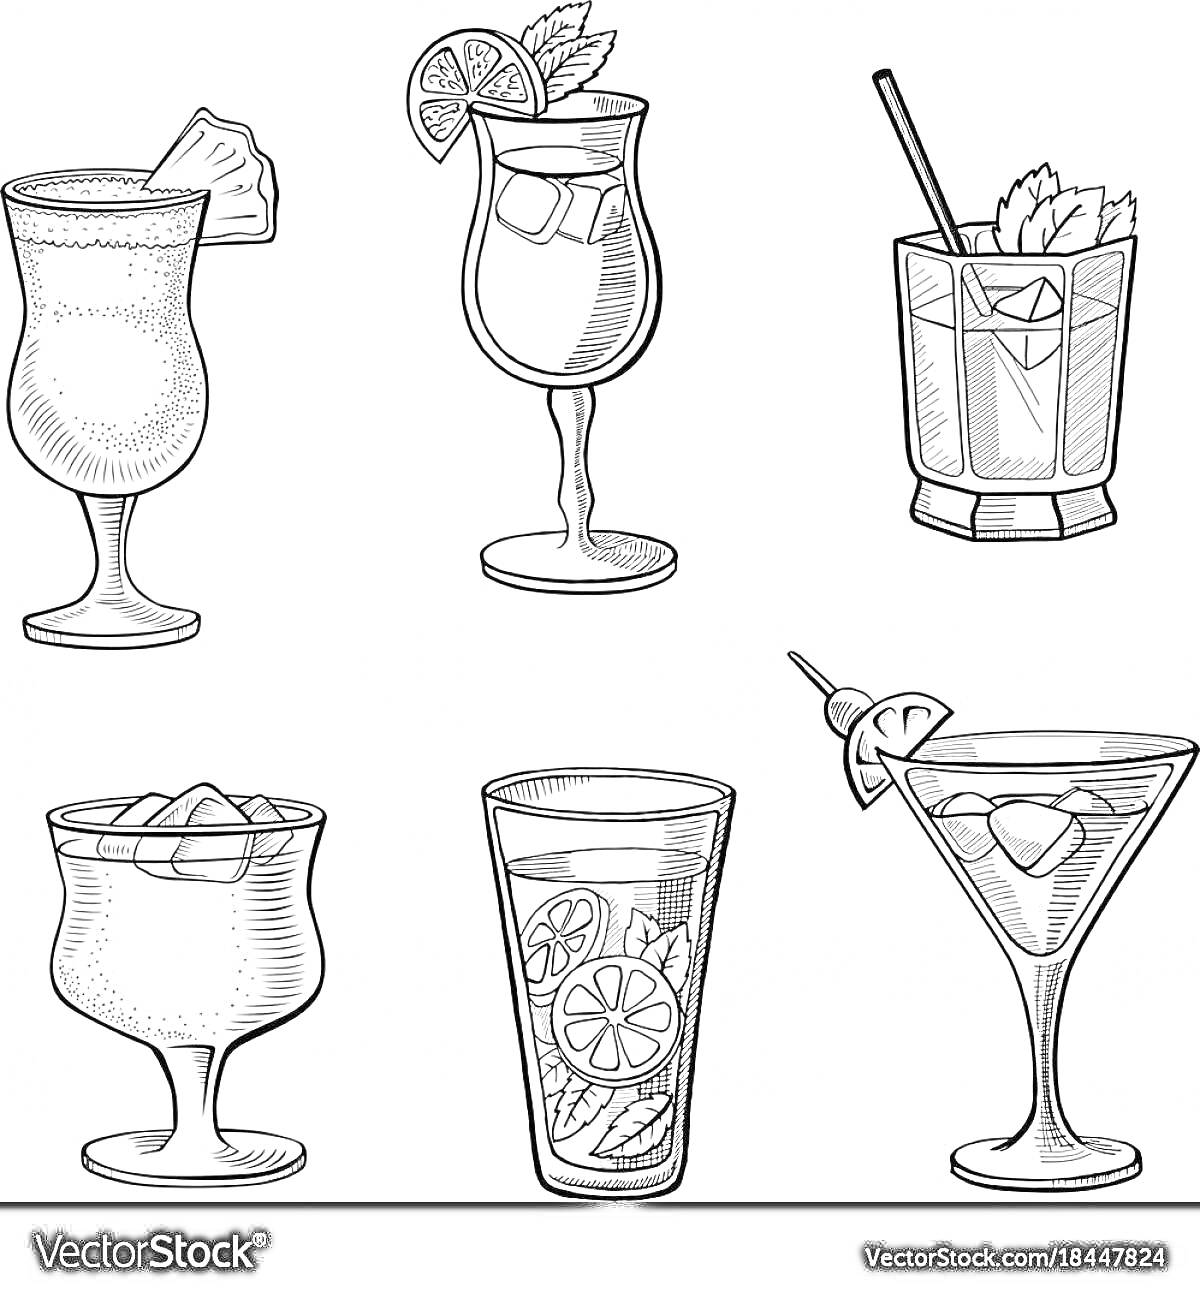 Шесть коктейлей в различных бокалах с различными украшениями, среди которых кусочек ананаса, спираль лимона, трубочка, мята, кусочки льда, ломтик цитруса и вишенка на шпажке.